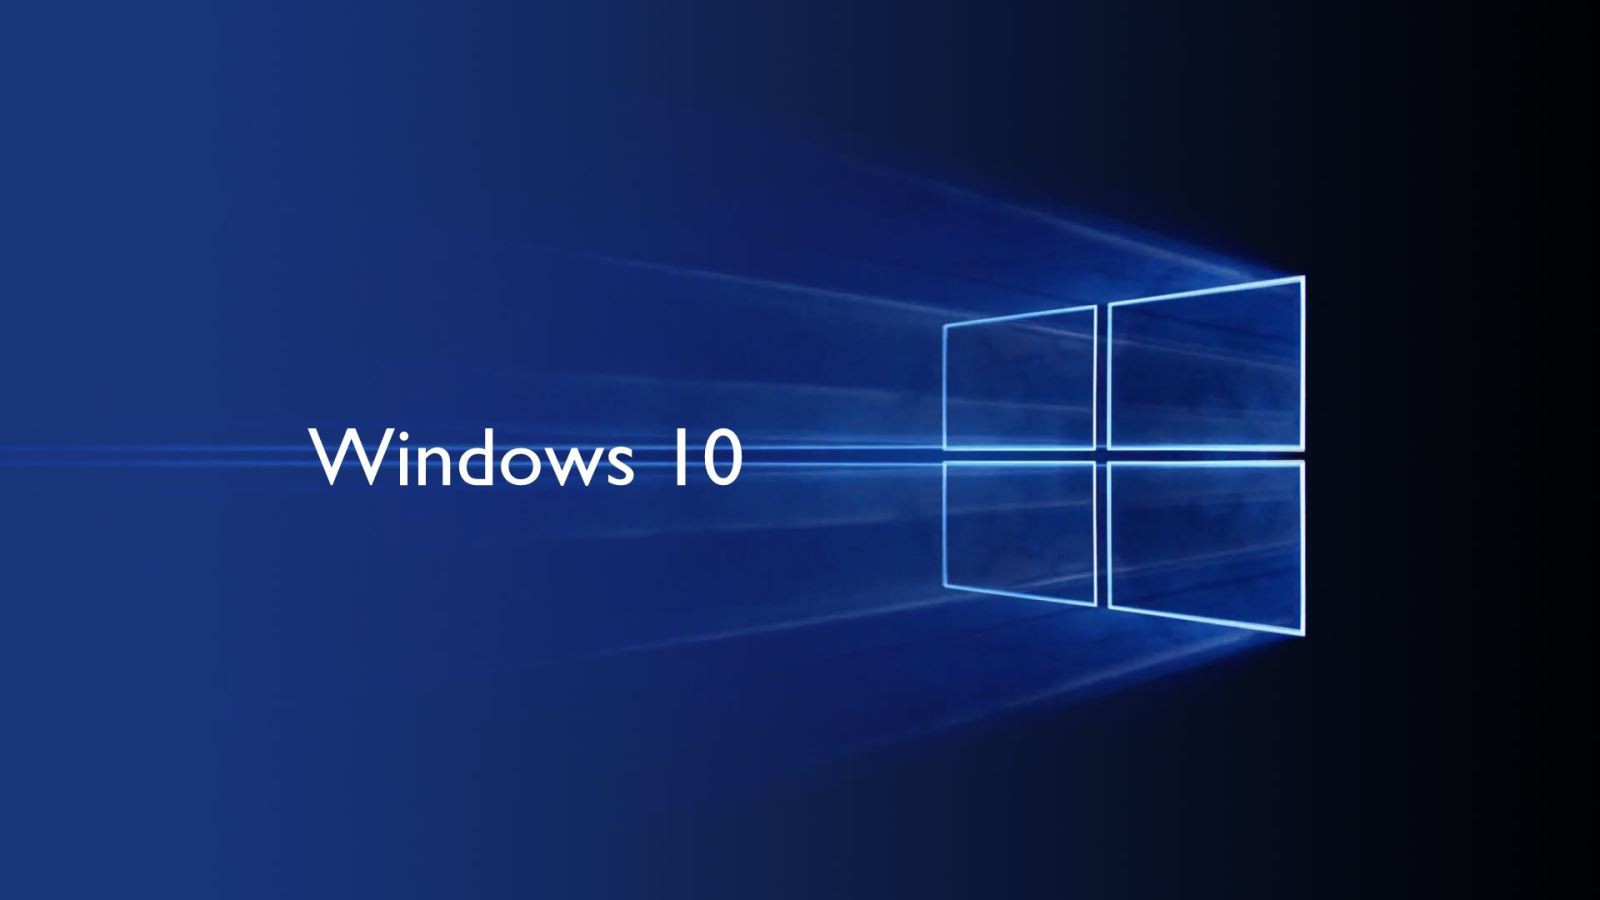 Hết năm 2017, không thể nâng cấp miễn phí Windows 10 - Fptshop.com.vn